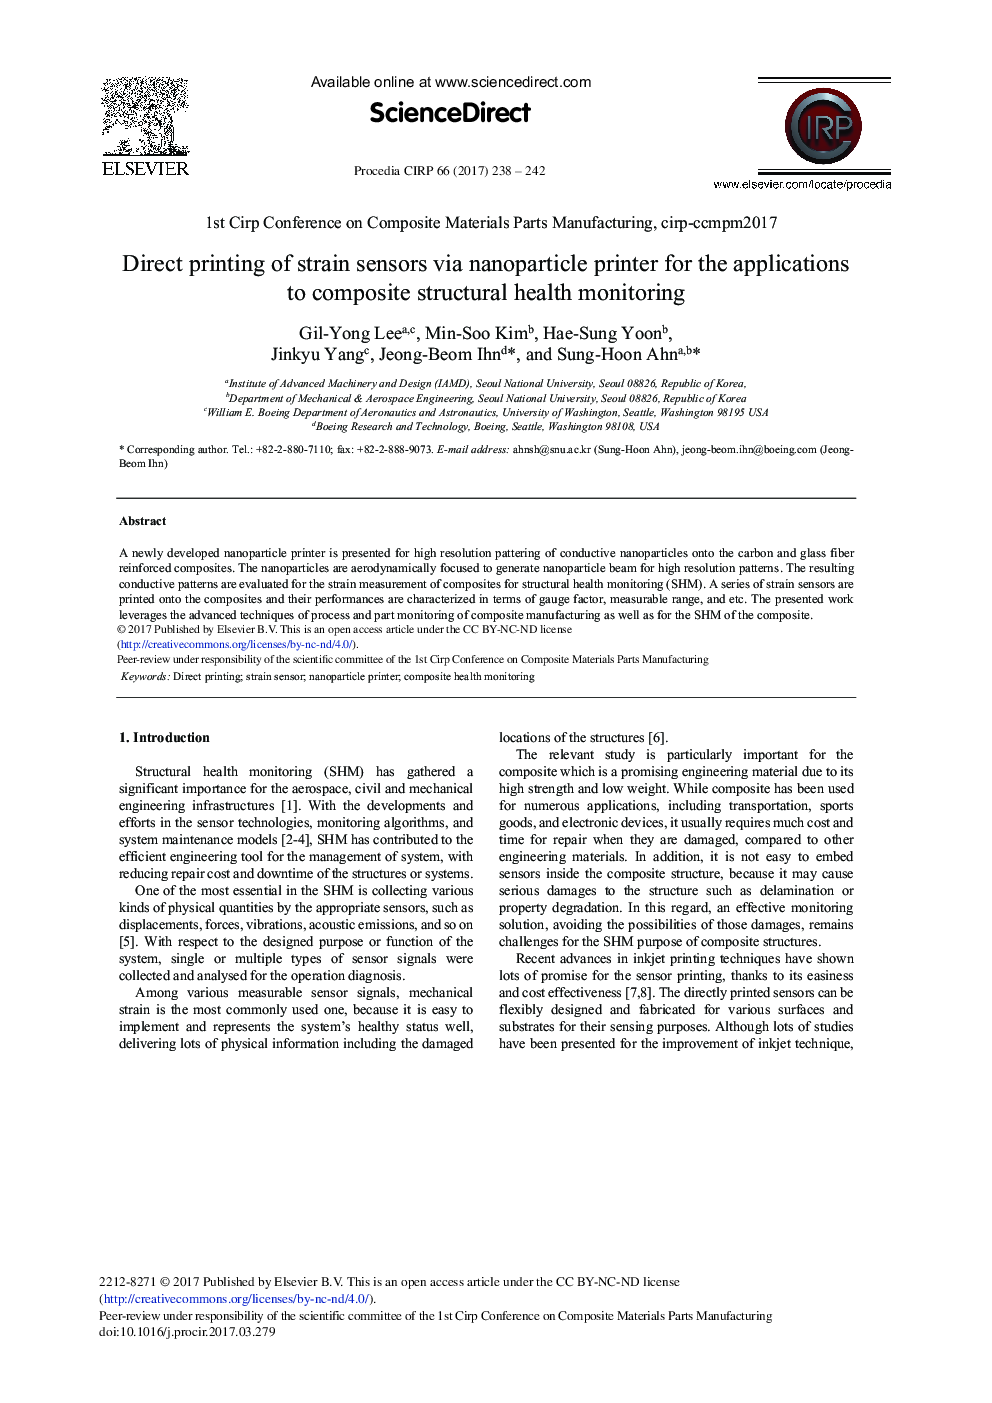 چاپ مستقیم سنسورهای فشار با استفاده از چاپگر نانوذرات برای برنامه های کاربردی برای نظارت بر سلامت سازه کامپوزیت 